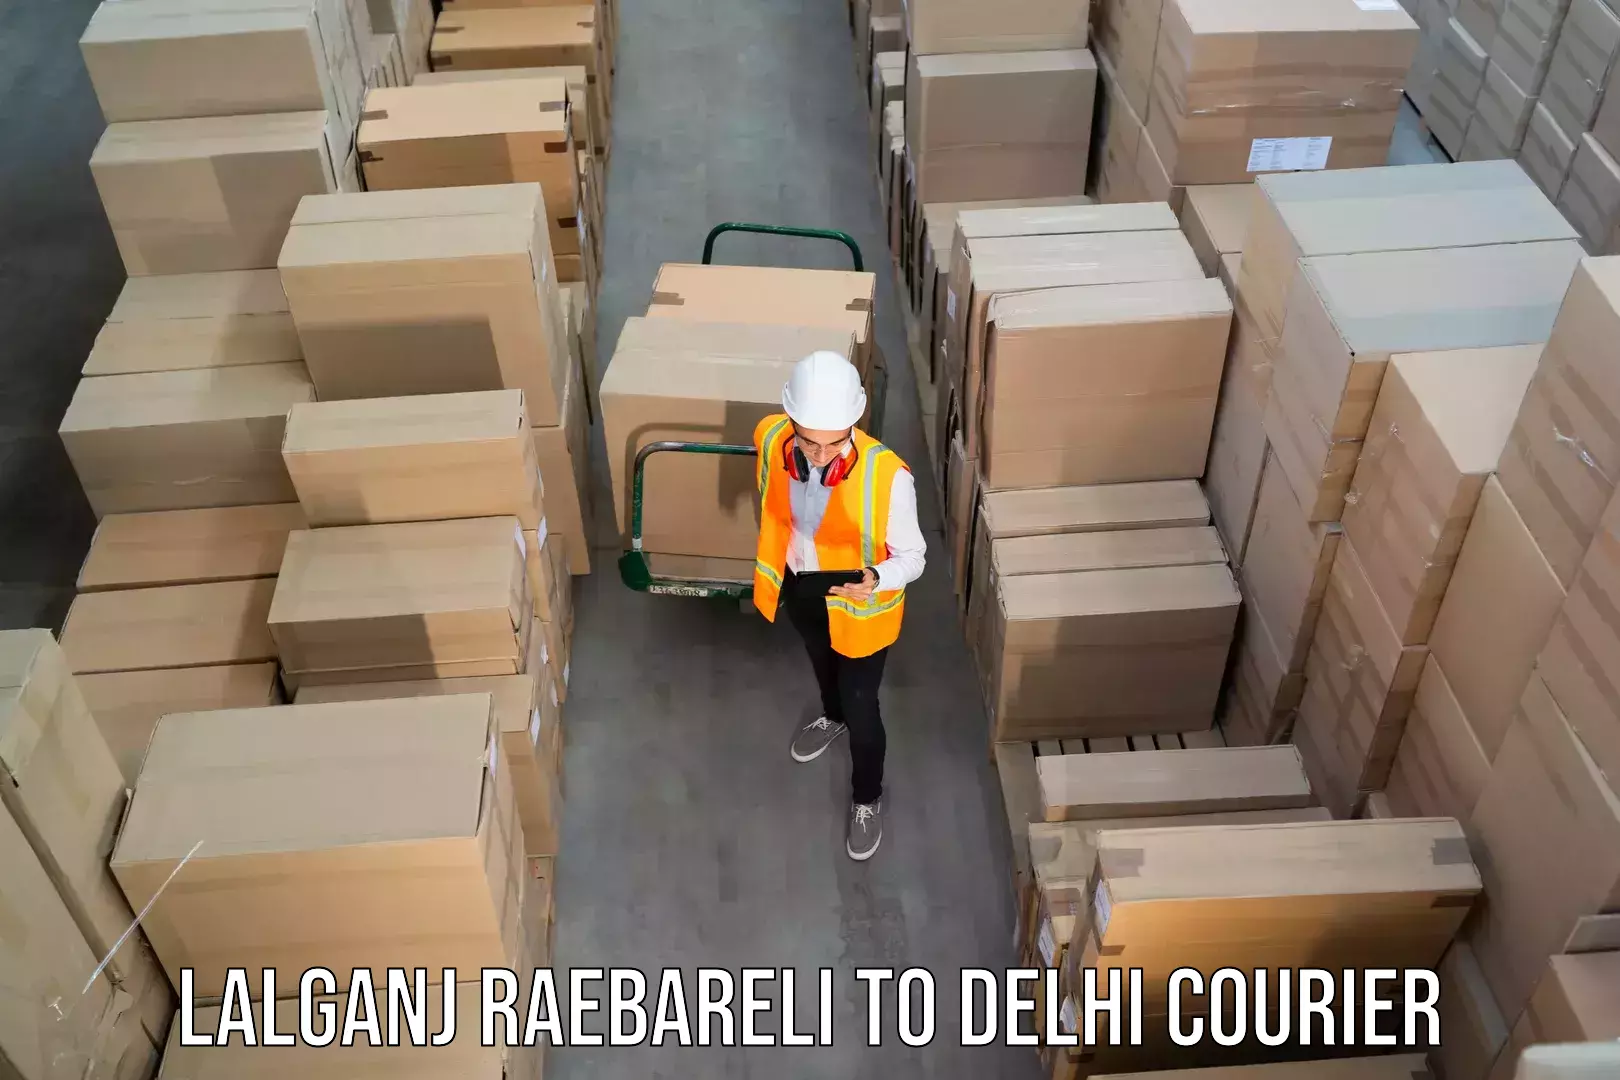 Reliable shipping partners Lalganj Raebareli to NIT Delhi